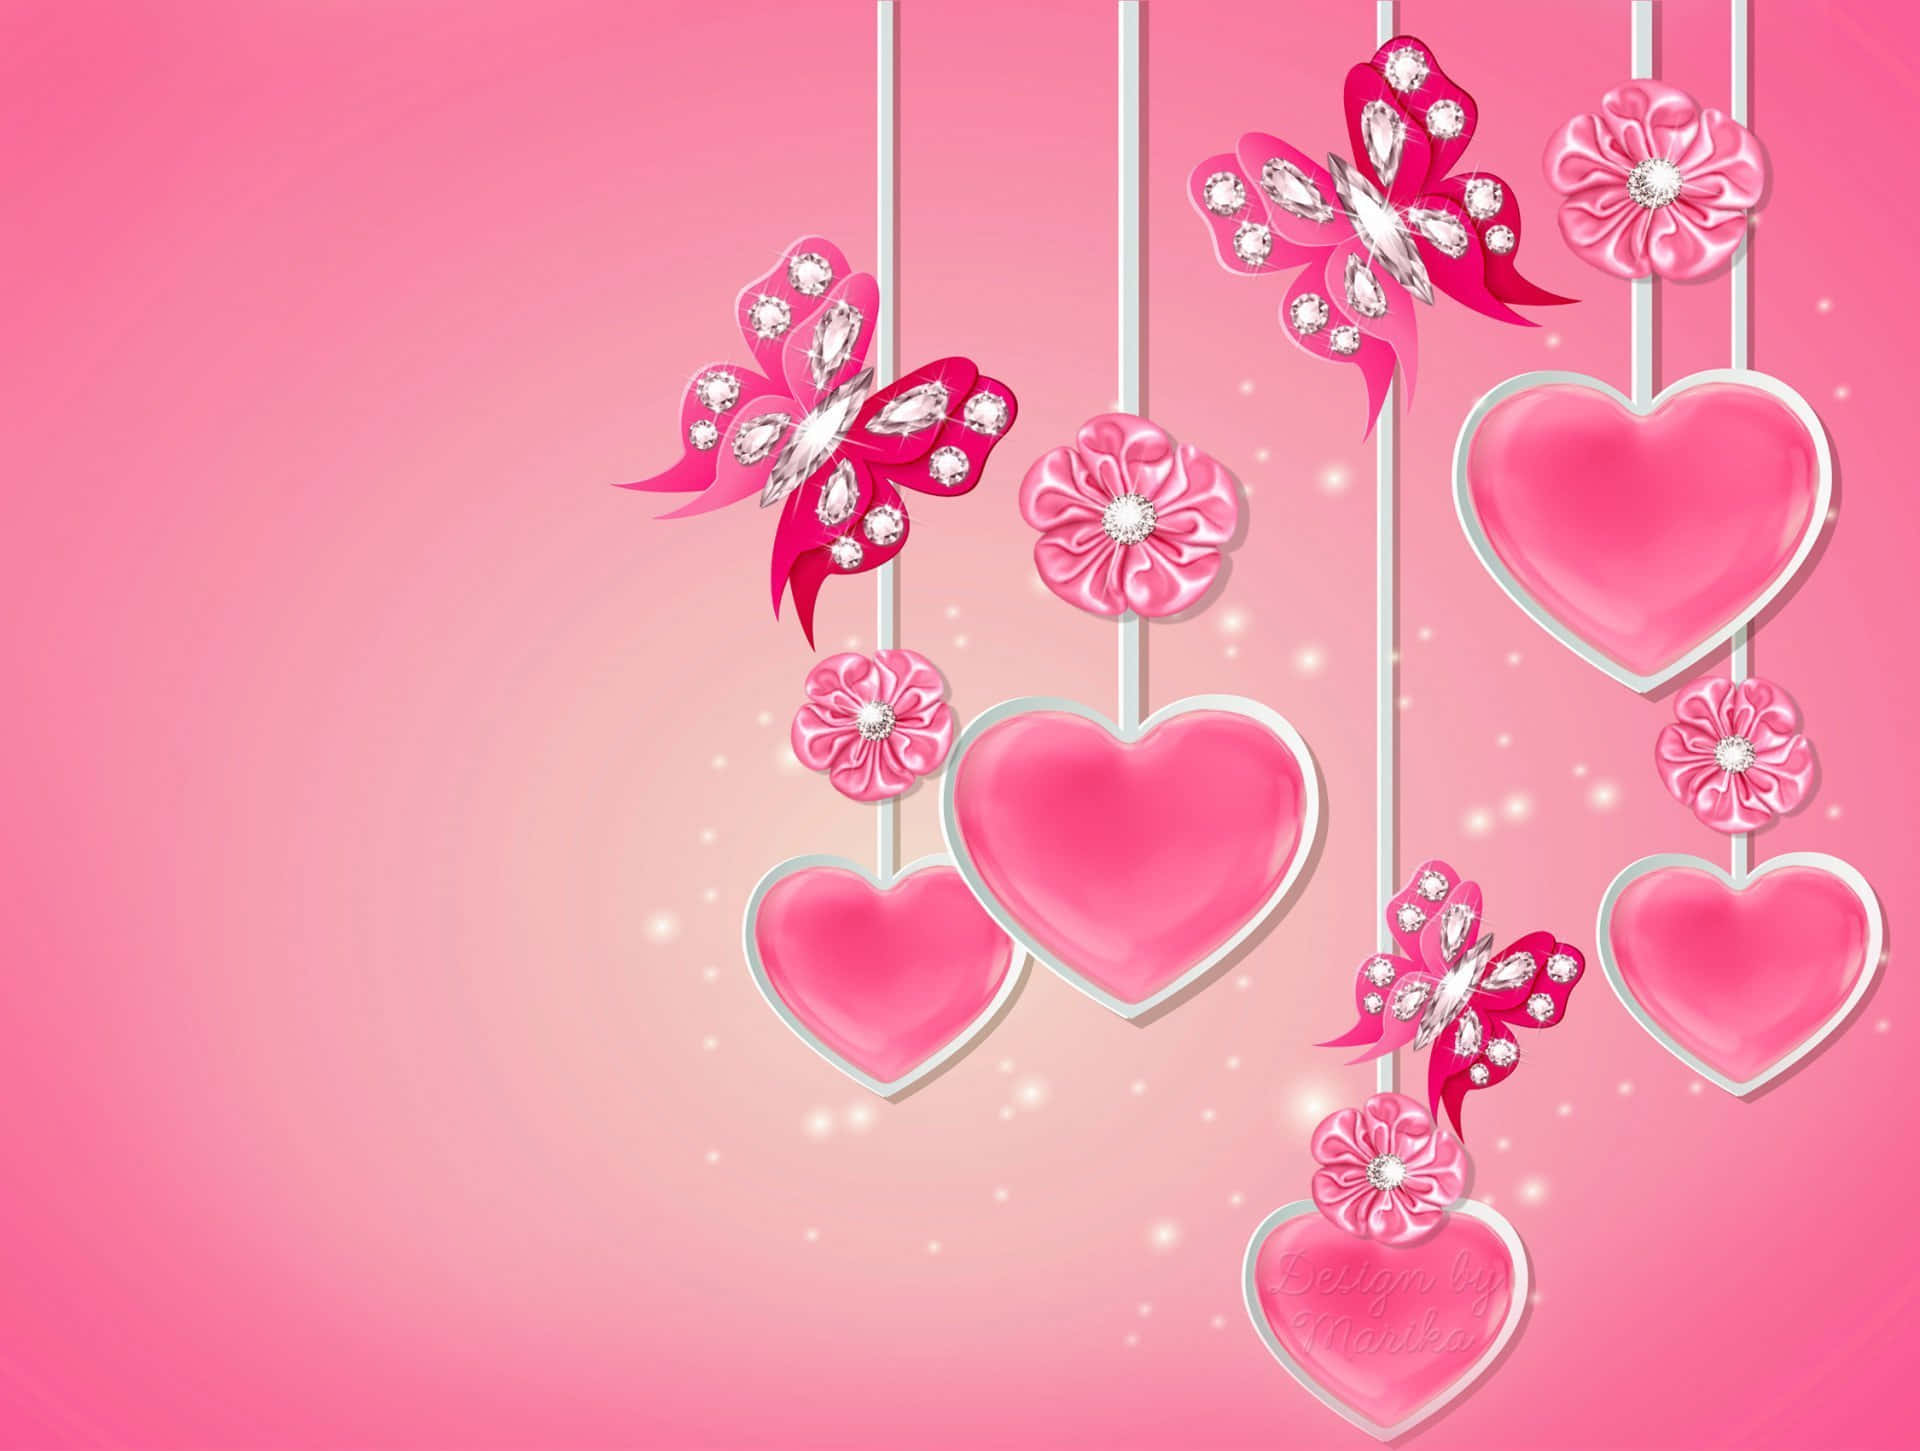 Sparkling Pink Hearts Desktop Background Wallpaper